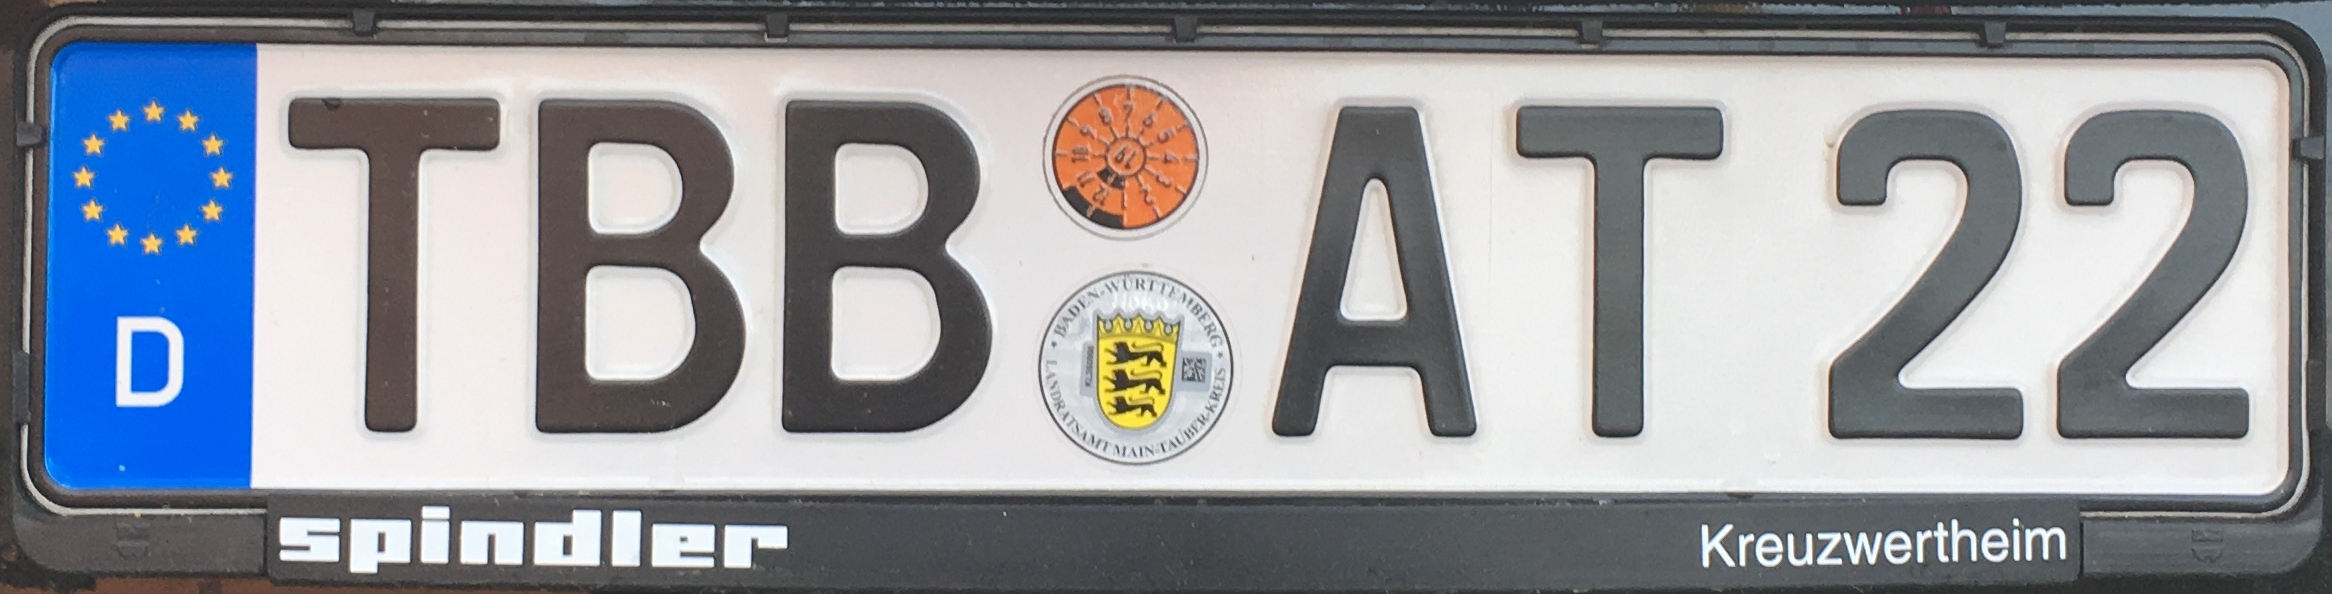 Registrační značka Německo - TBB - Tauberbischofsheim, foto: podalnici.cz